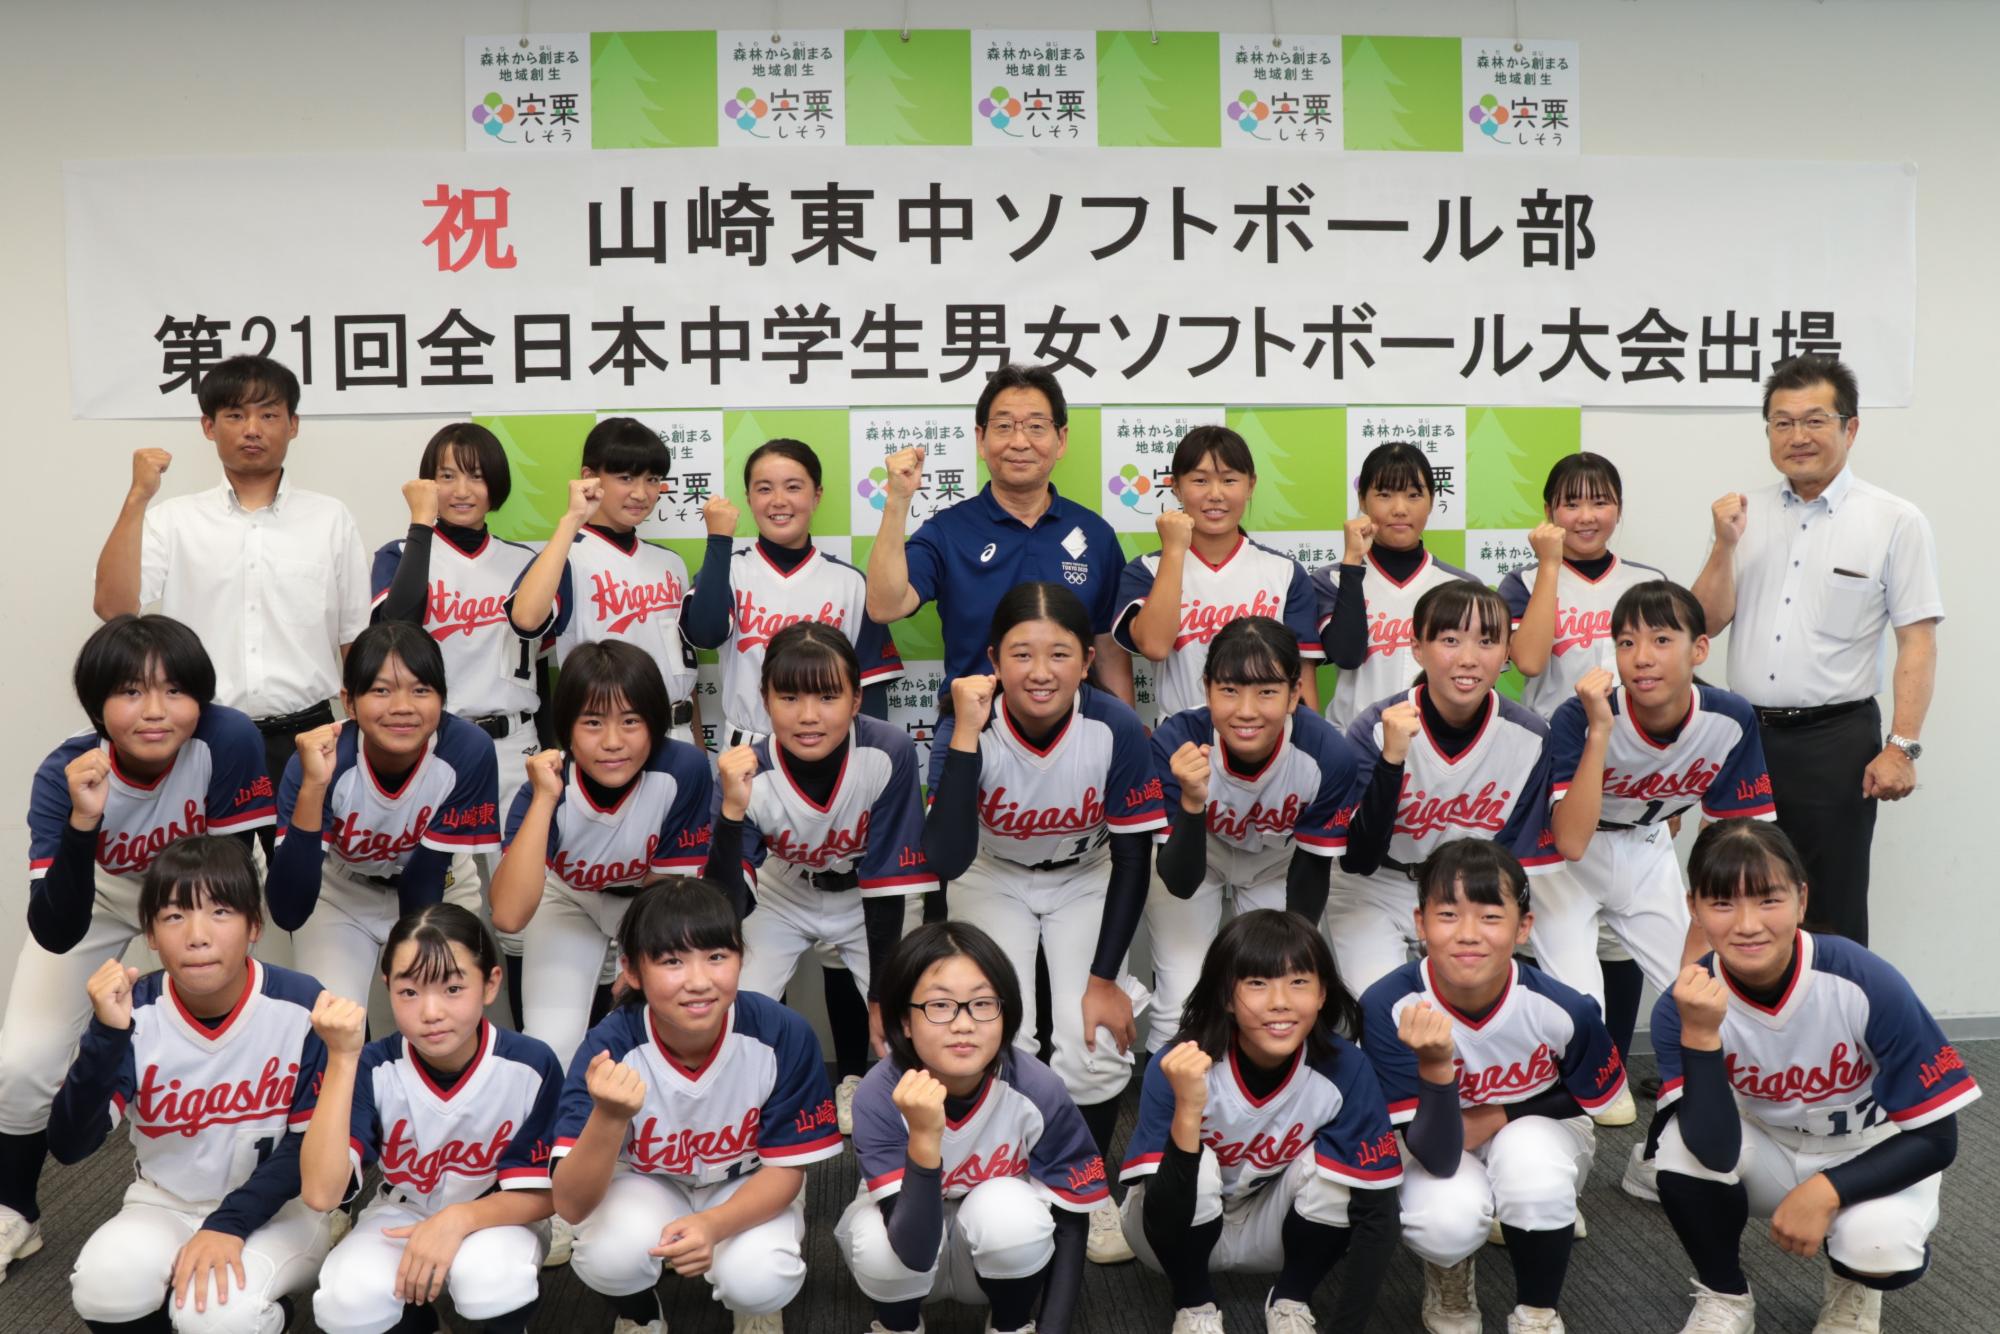 山崎東中学校ソフトボール部のメンバーが並んでガッツポーズをとる写真